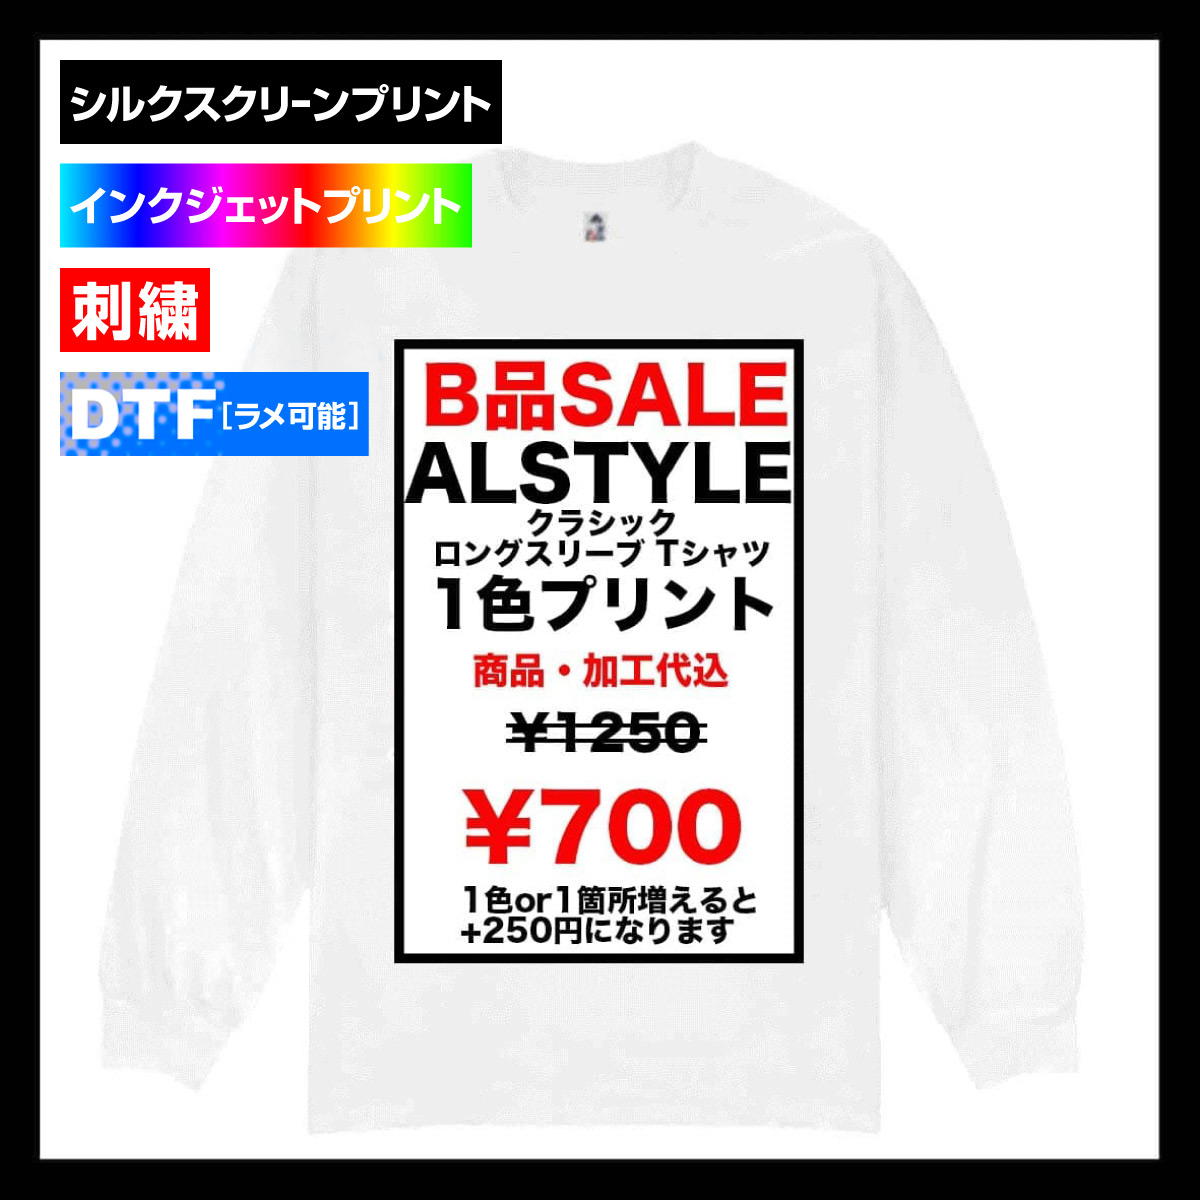 【B品SALE】ALSTYLE (AAA) アルスタイル 6.0 oz クラシック ロングスリーブ Tシャツ (品番1304_IQ)